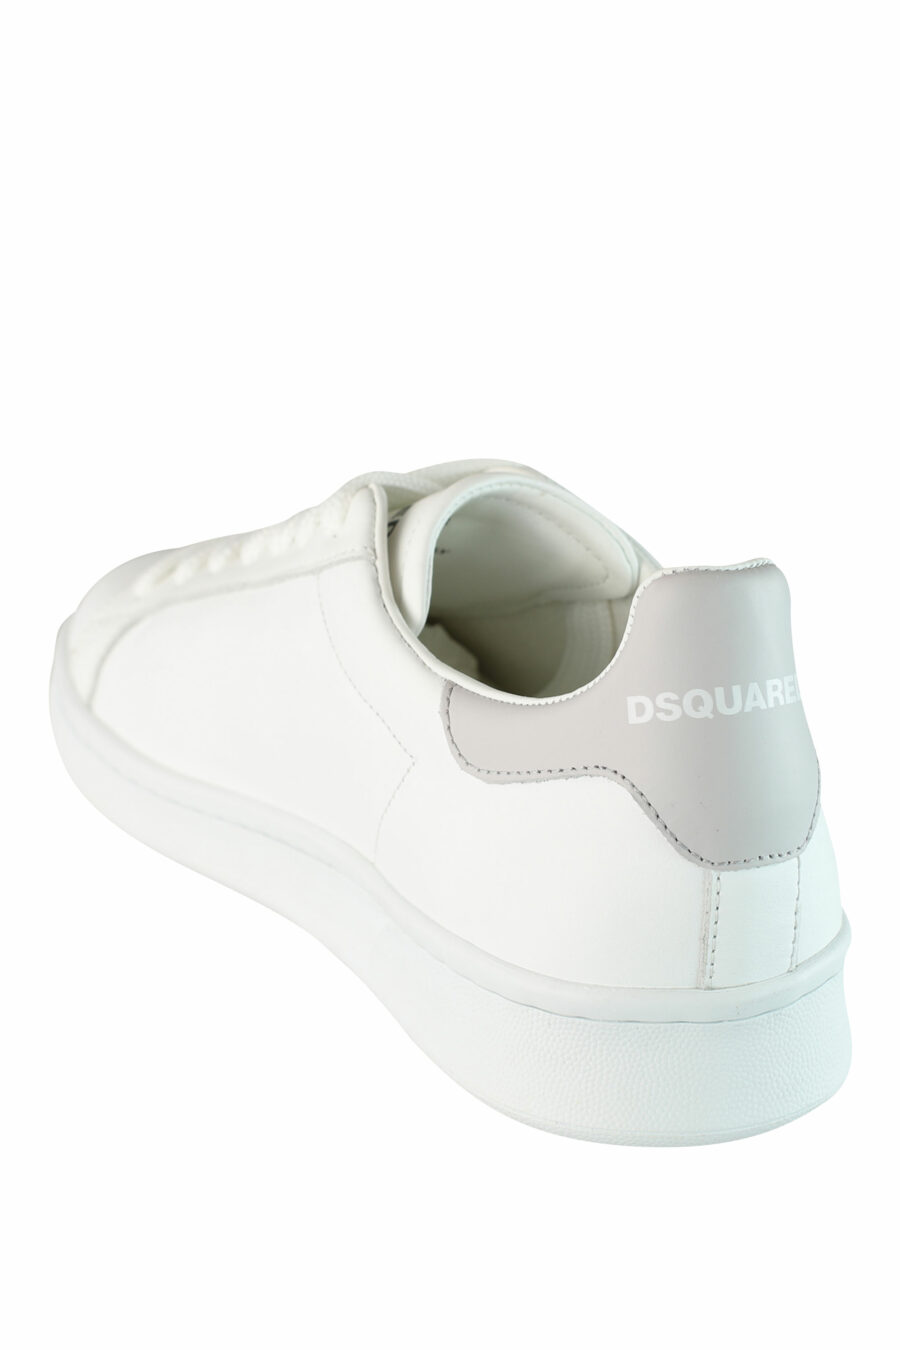 Zapatillas blancas "boxer" con hoja negra y detalles grises - IMG 1481